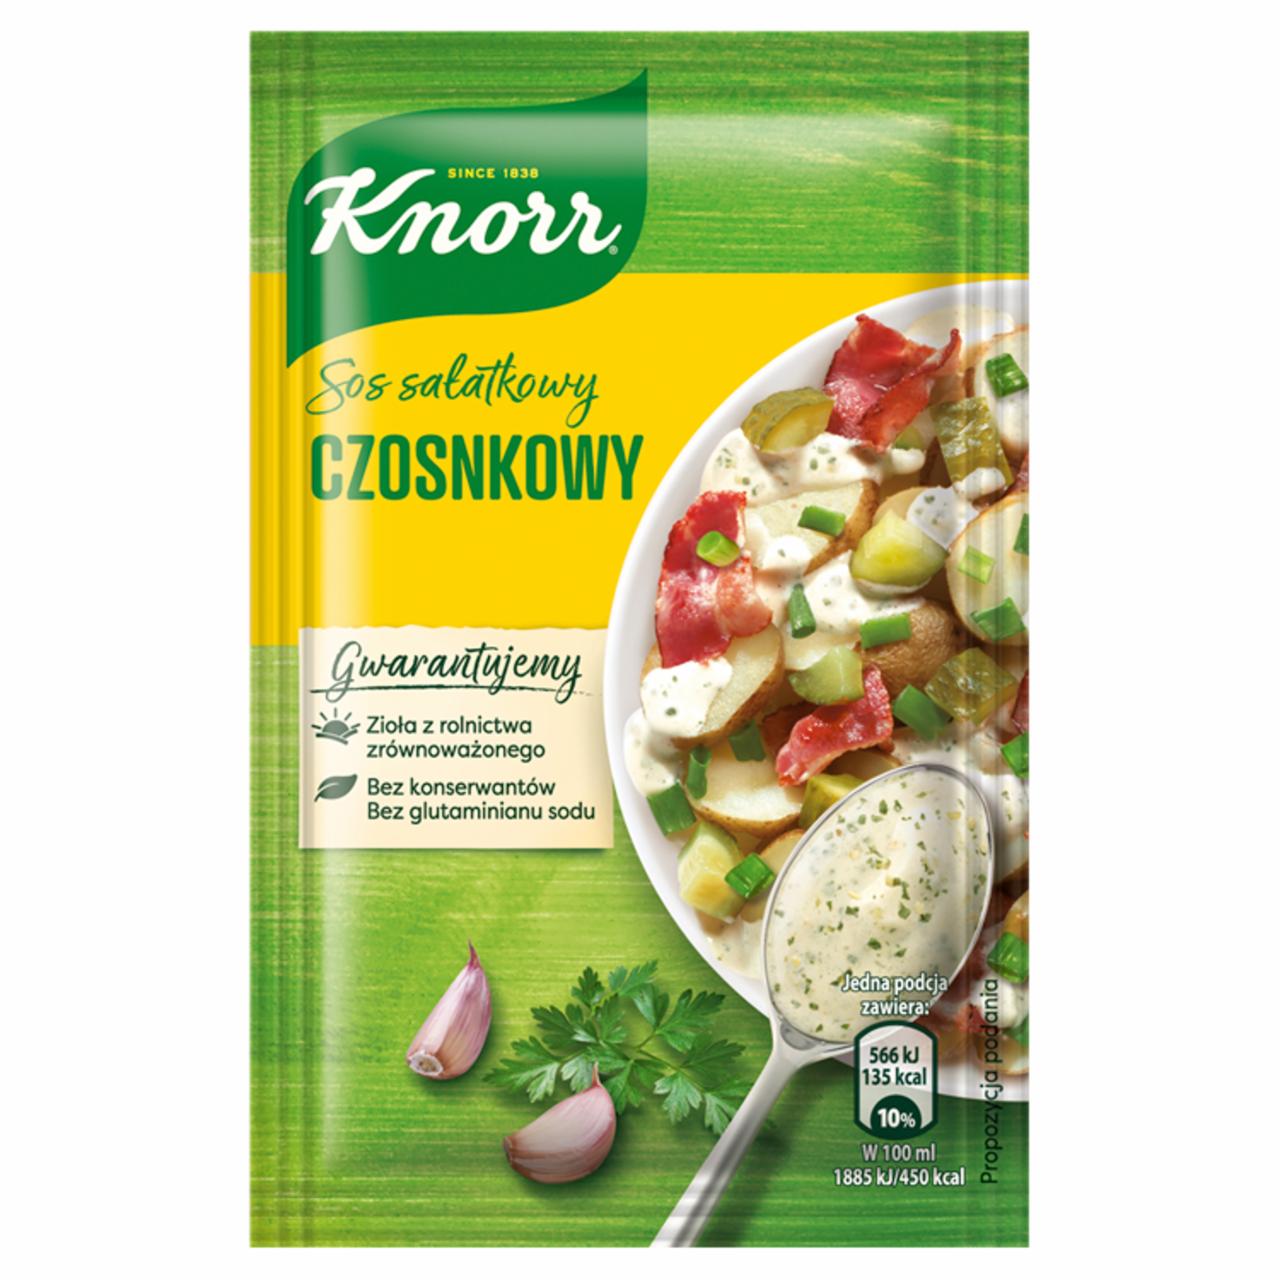 Zdjęcia - Knorr Sos sałatkowy czosnkowy 8 g